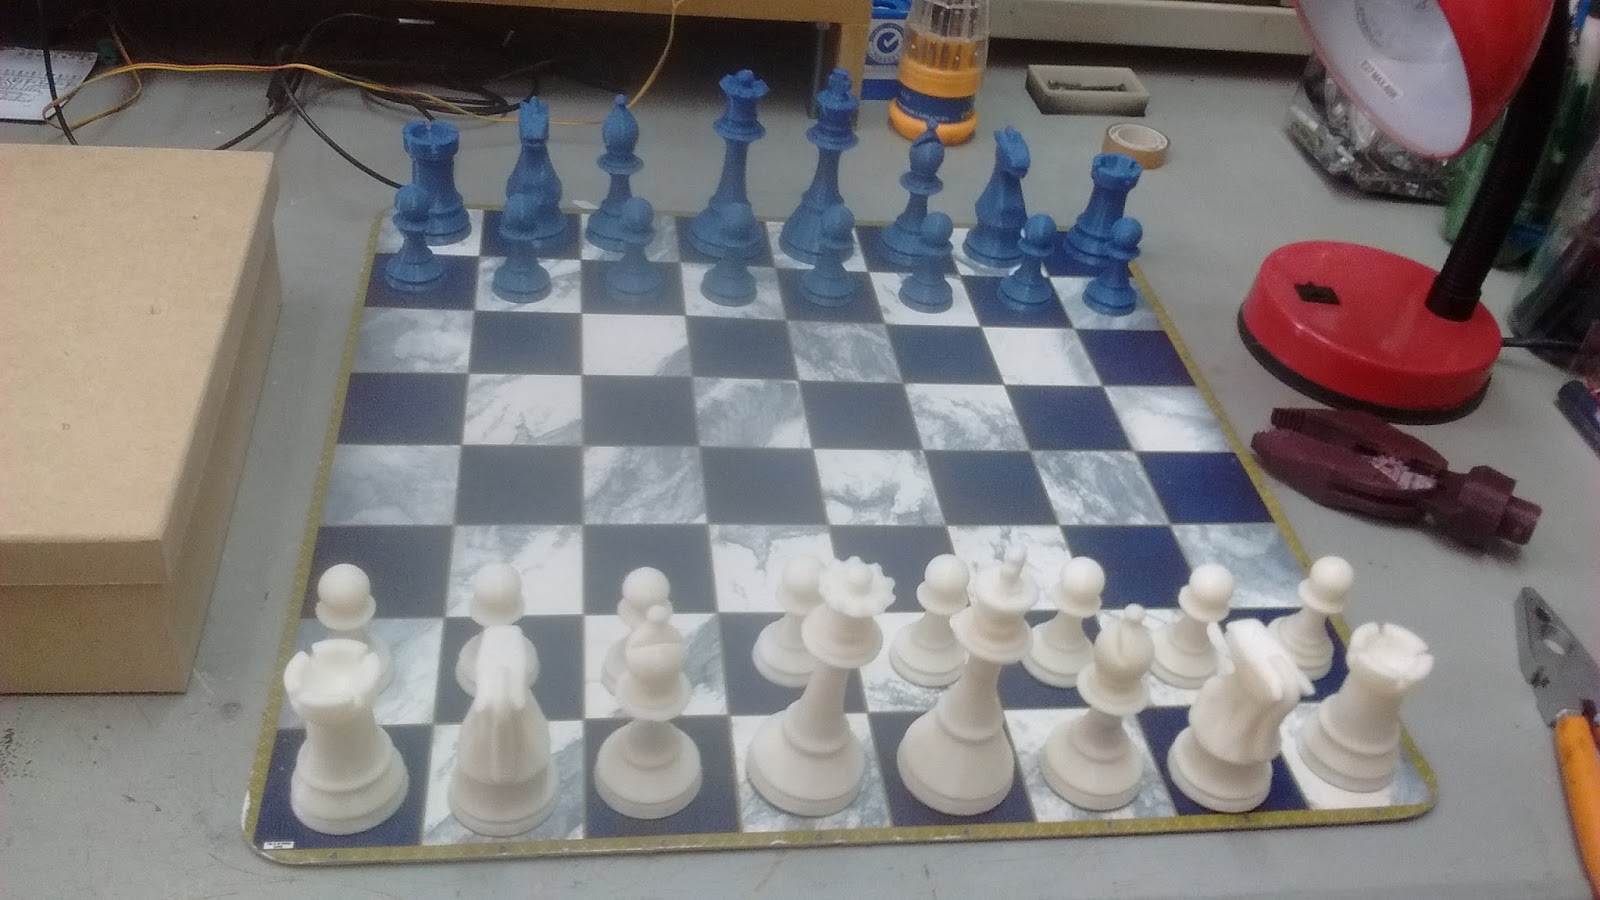 Como Jogar Xadrez - Passo a Passo - Parte1/3 